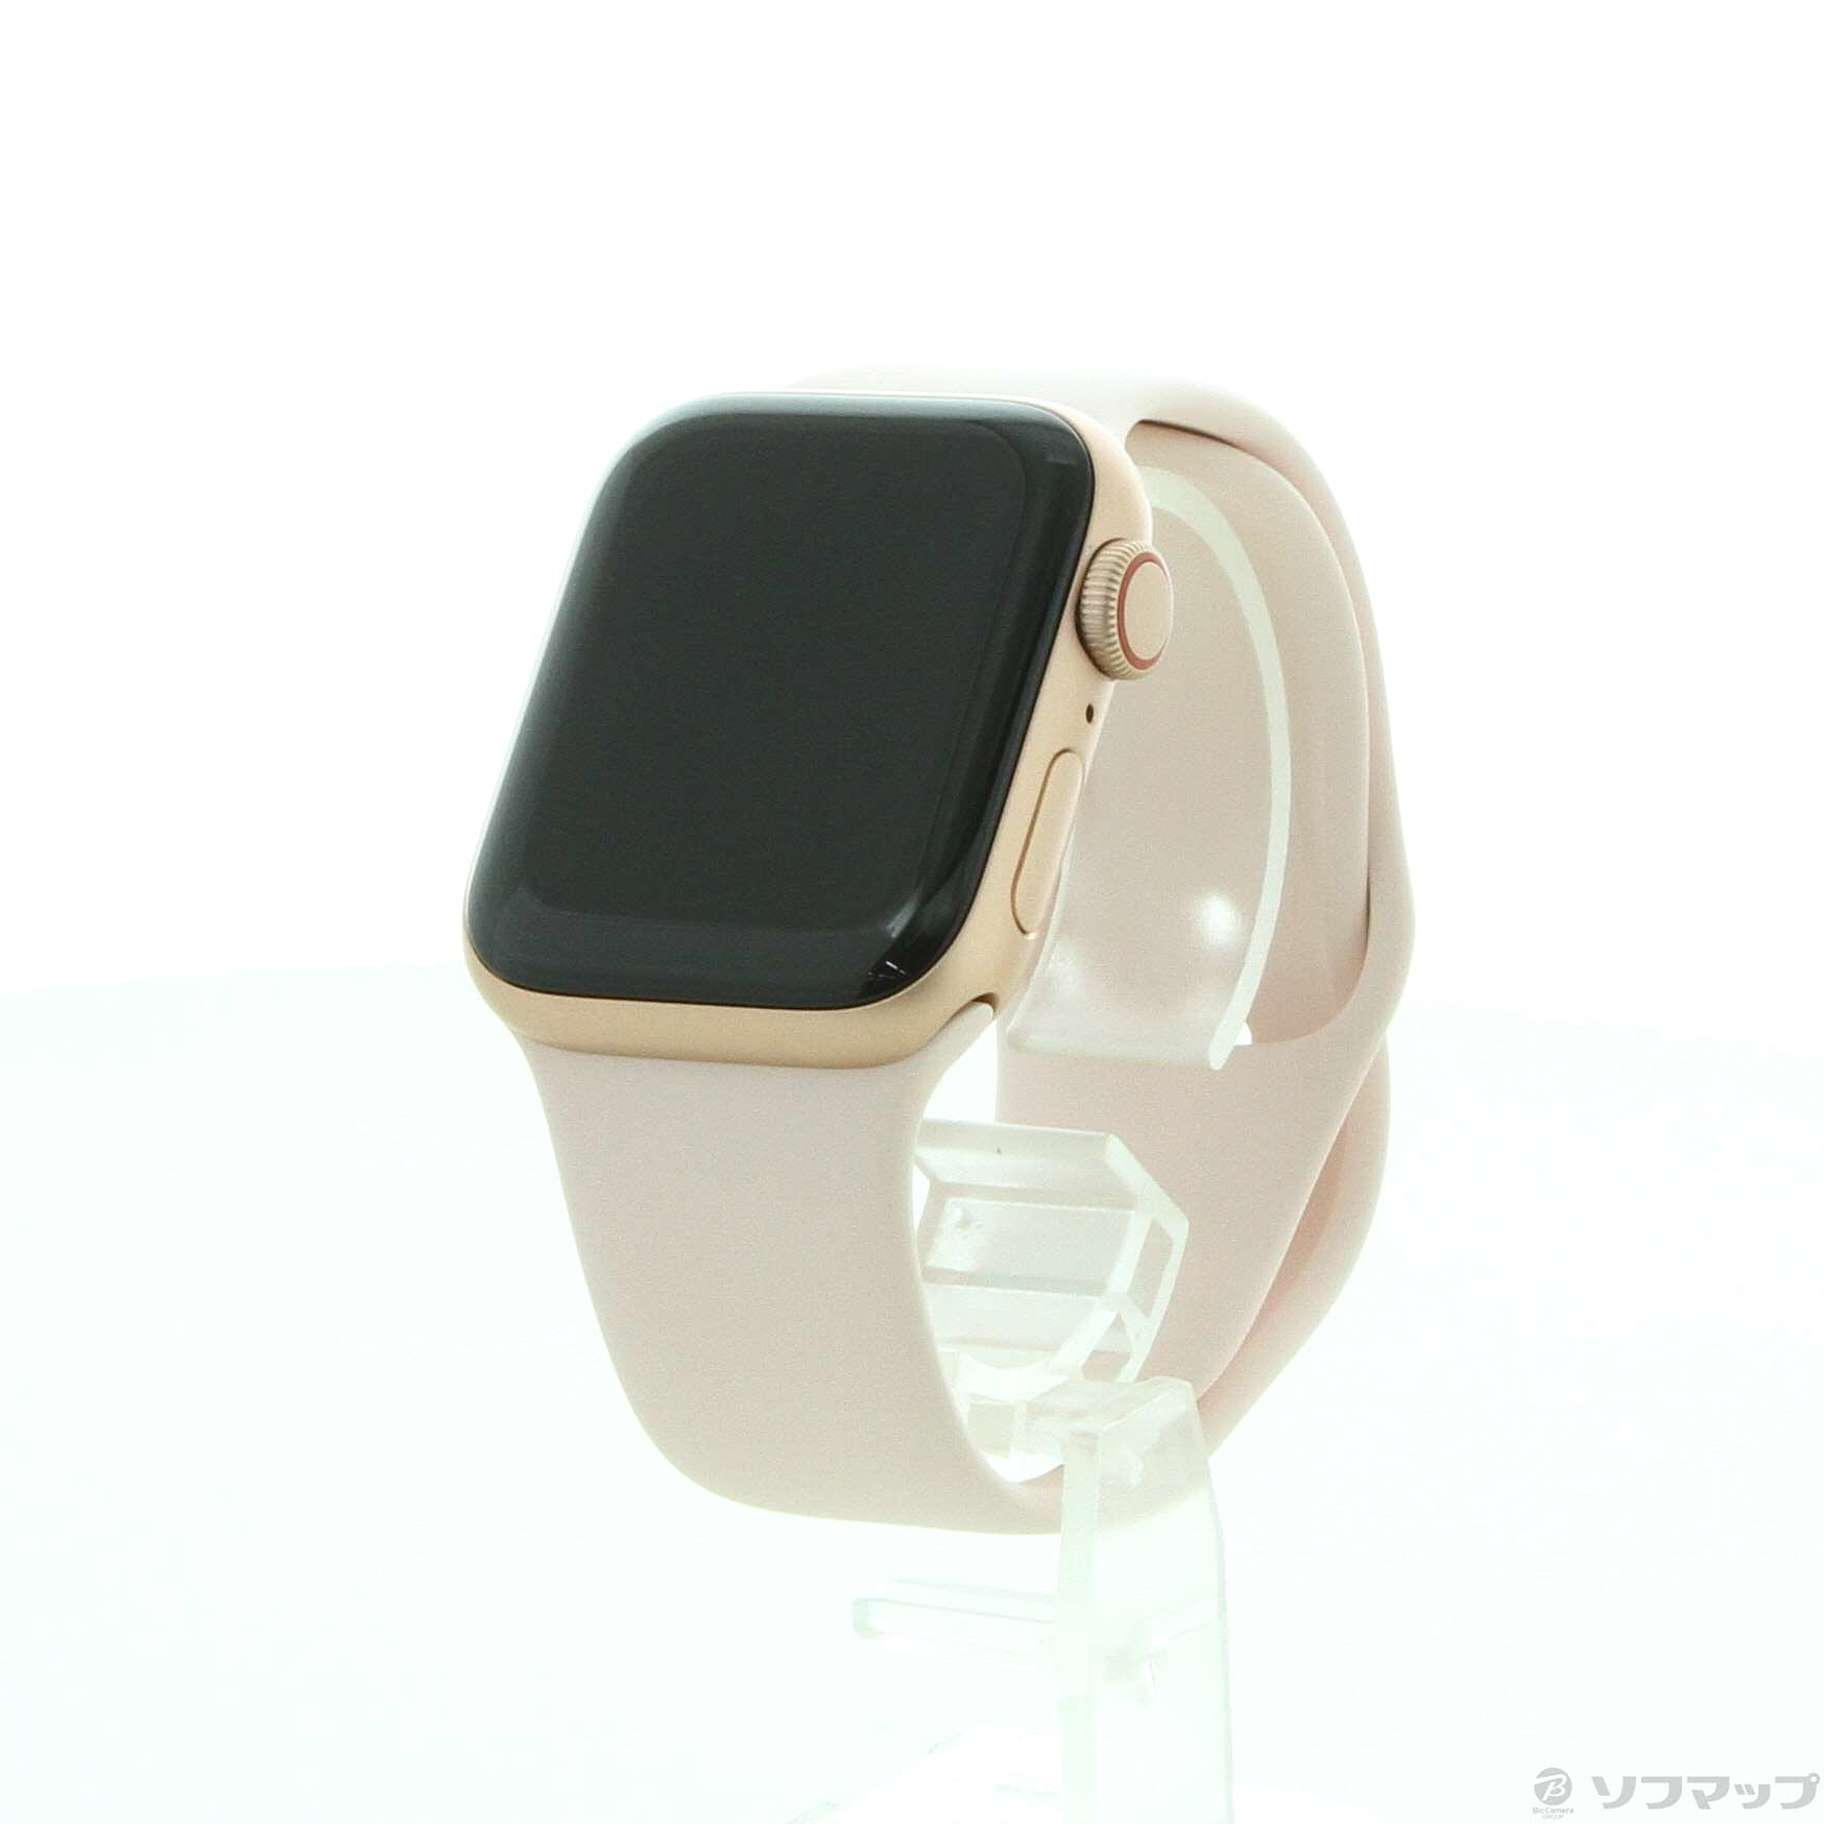 【新品未開封】Apple Watch SE GPS 40mm ゴールド | spacesofculture.com